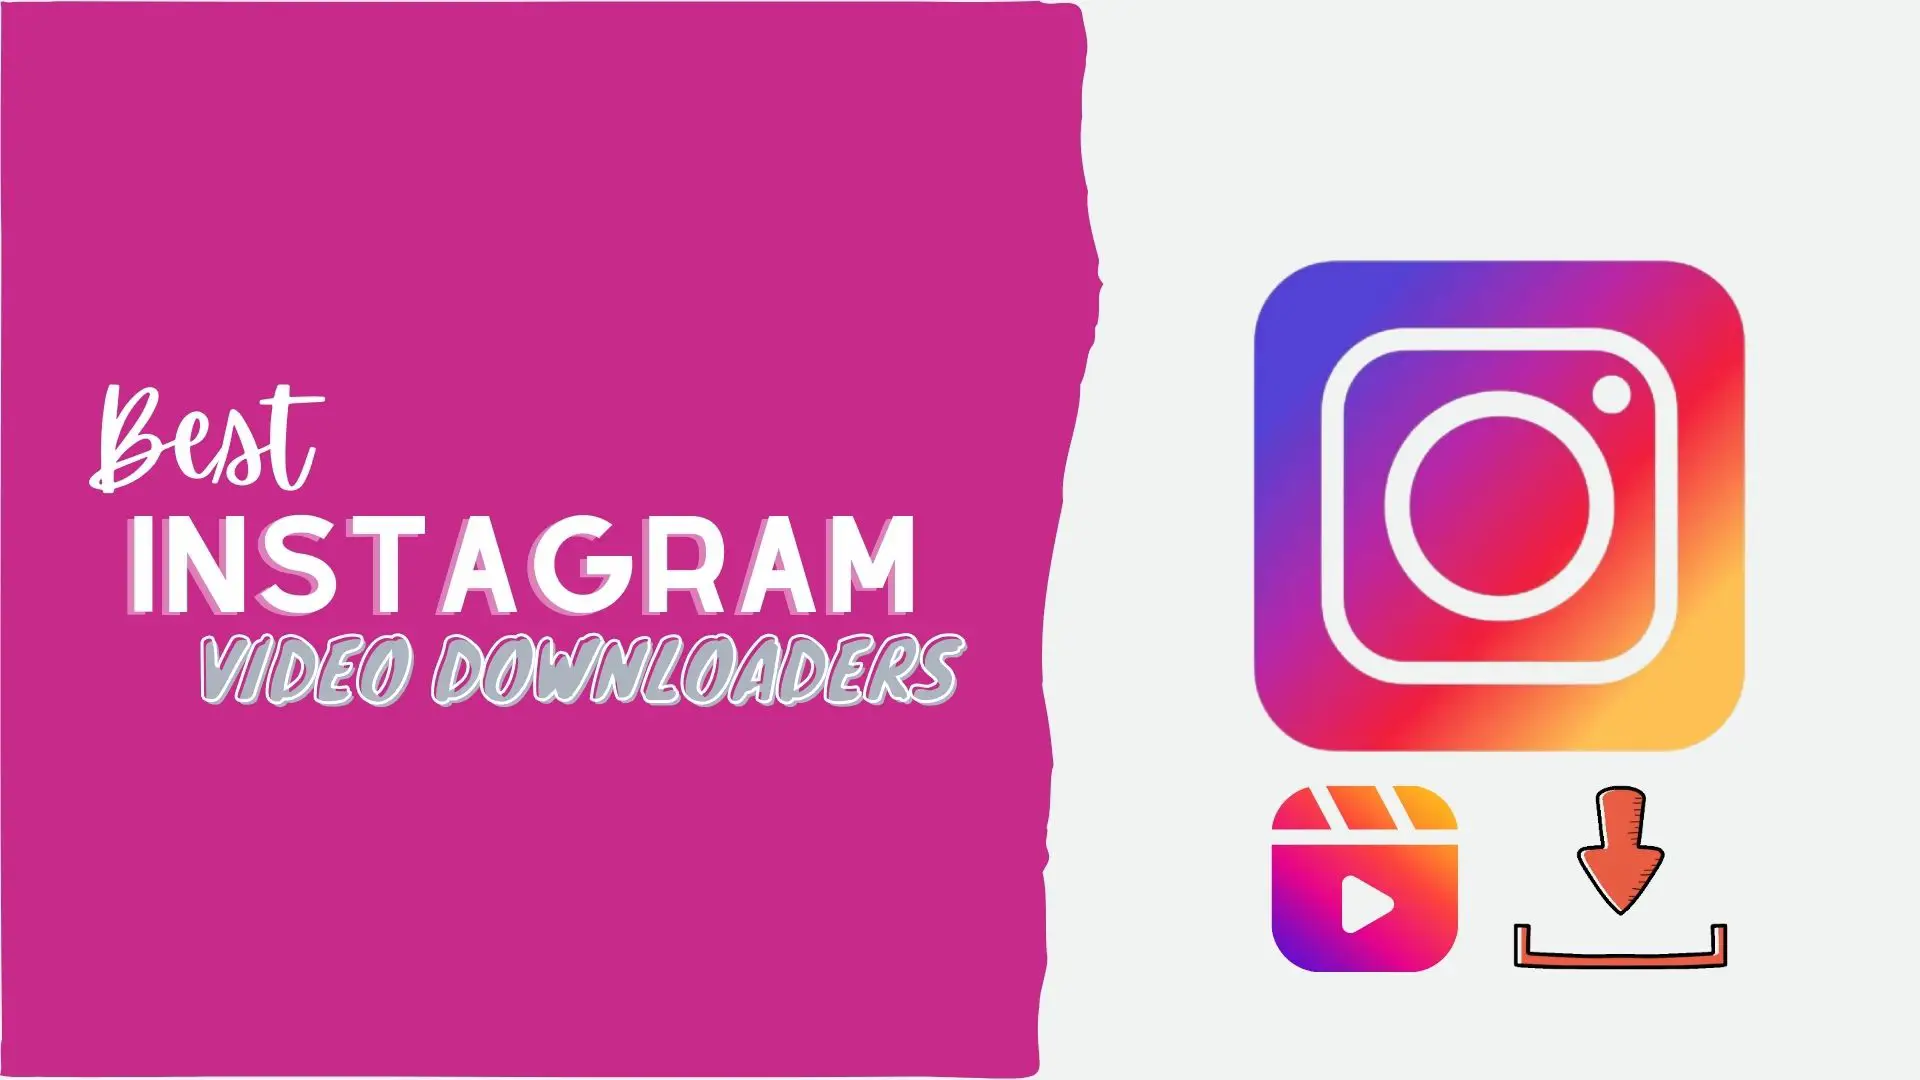 Best Instagram Video Downloaders Online